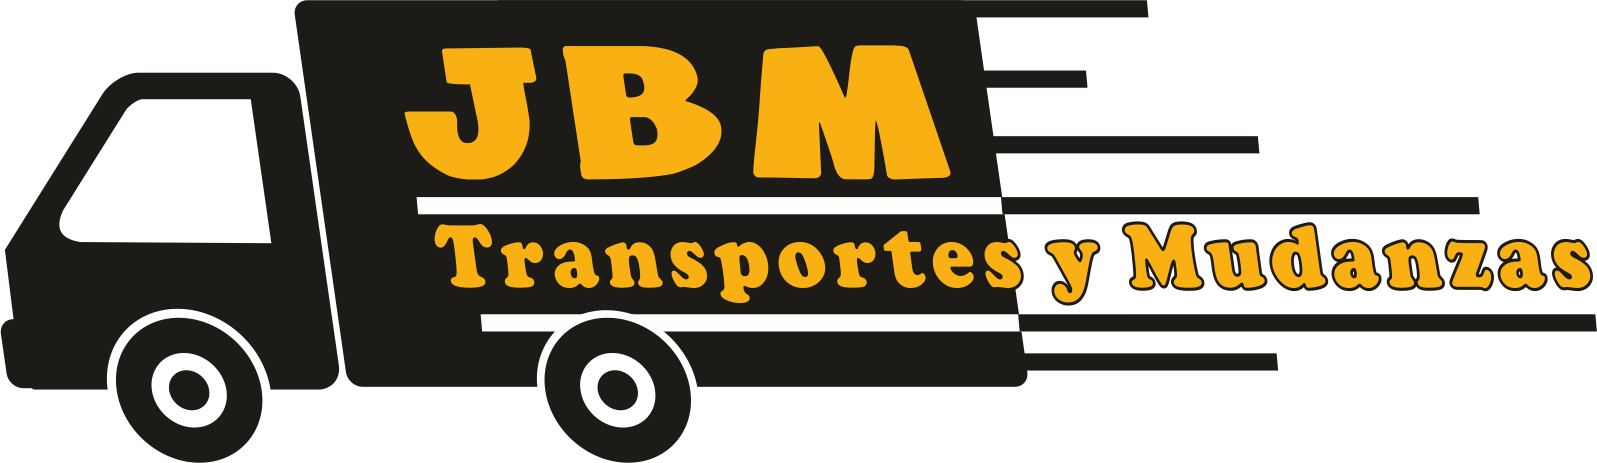 Mudanzas y Transporte en Valencia JBM